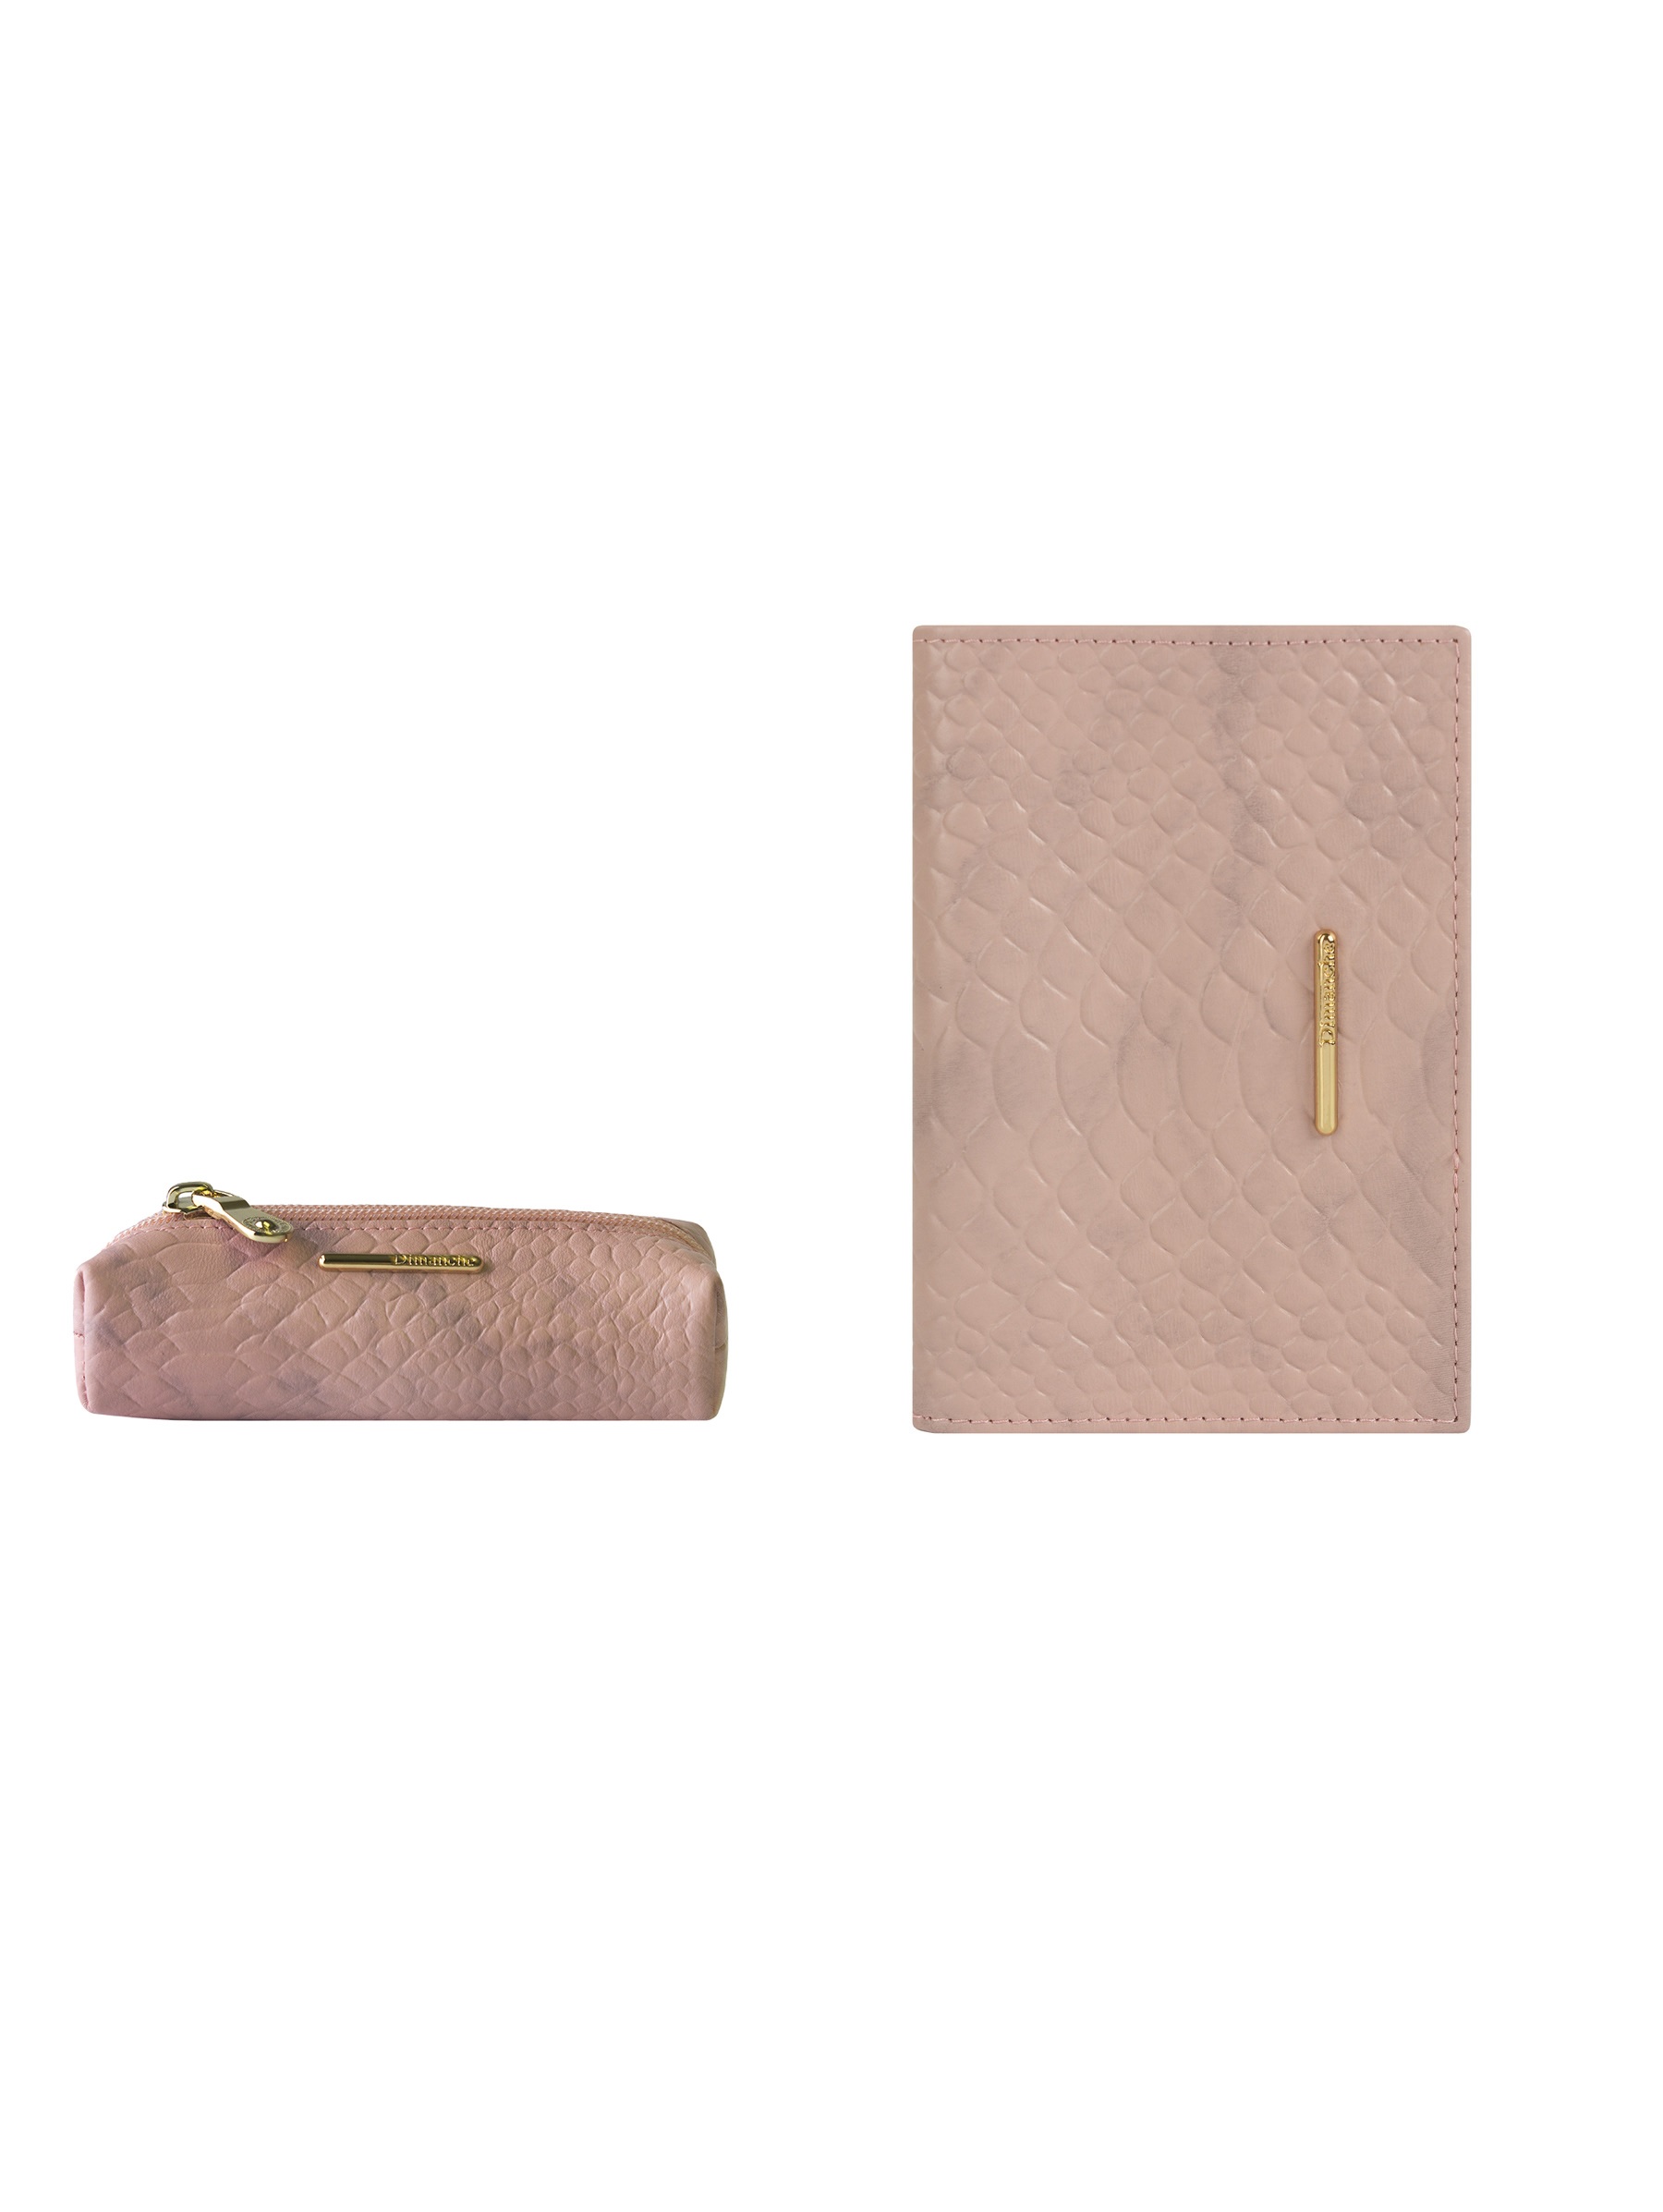 Подарочный набор Dimanche 389-790-795-1 Обложка для паспорта и ключница розовый